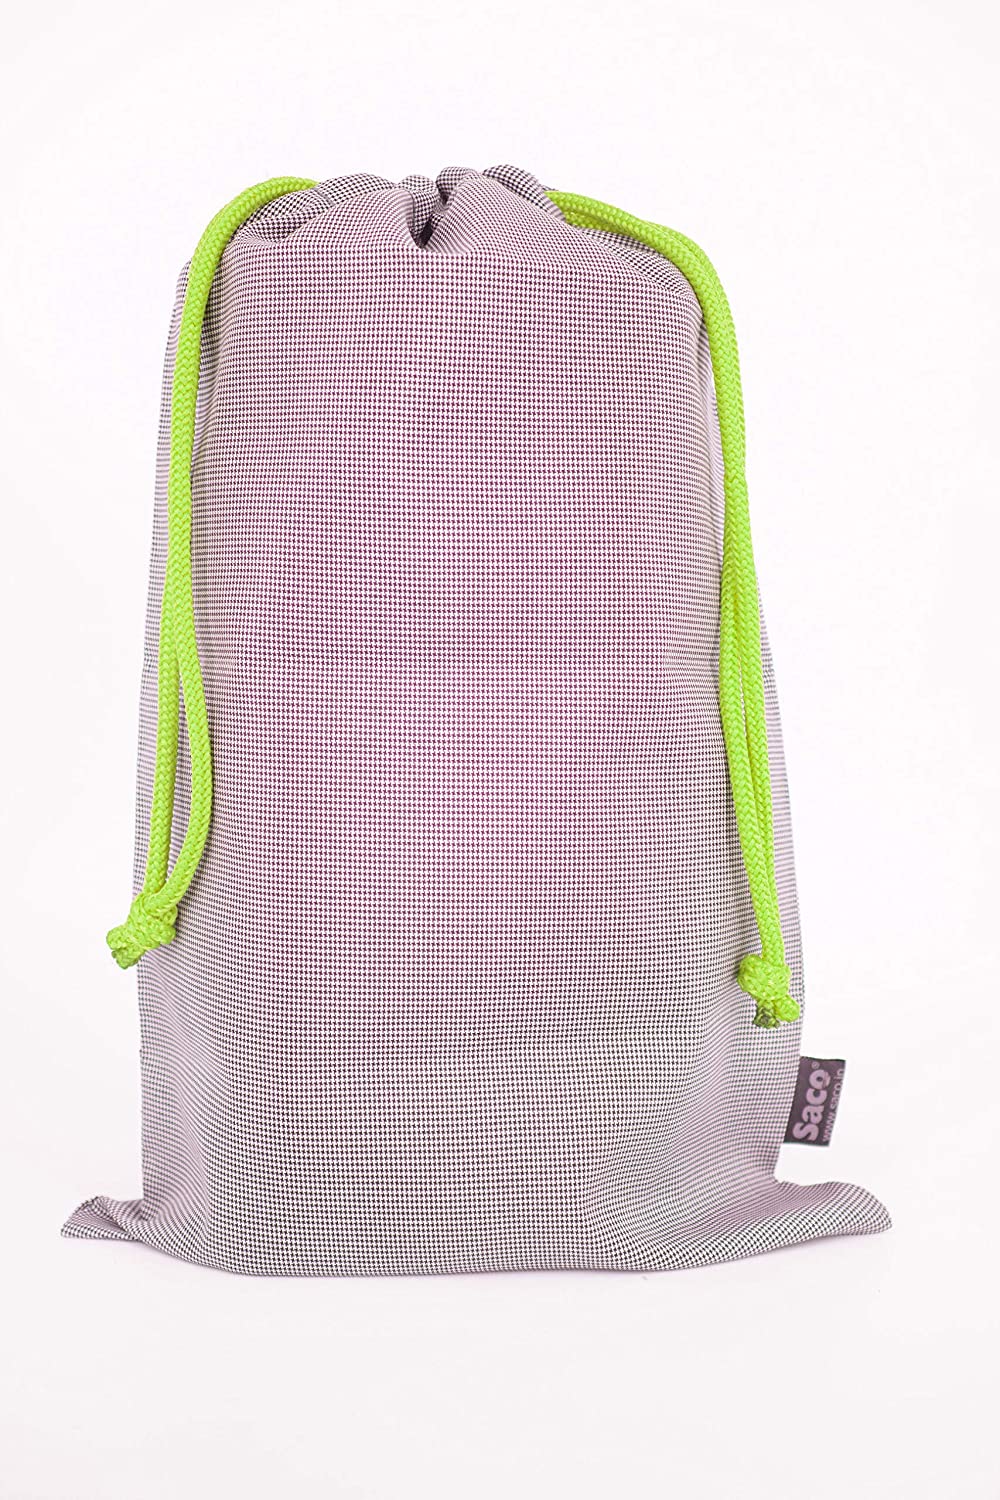 Backpack Organizer Insert For Faraday Bags - SLNT®